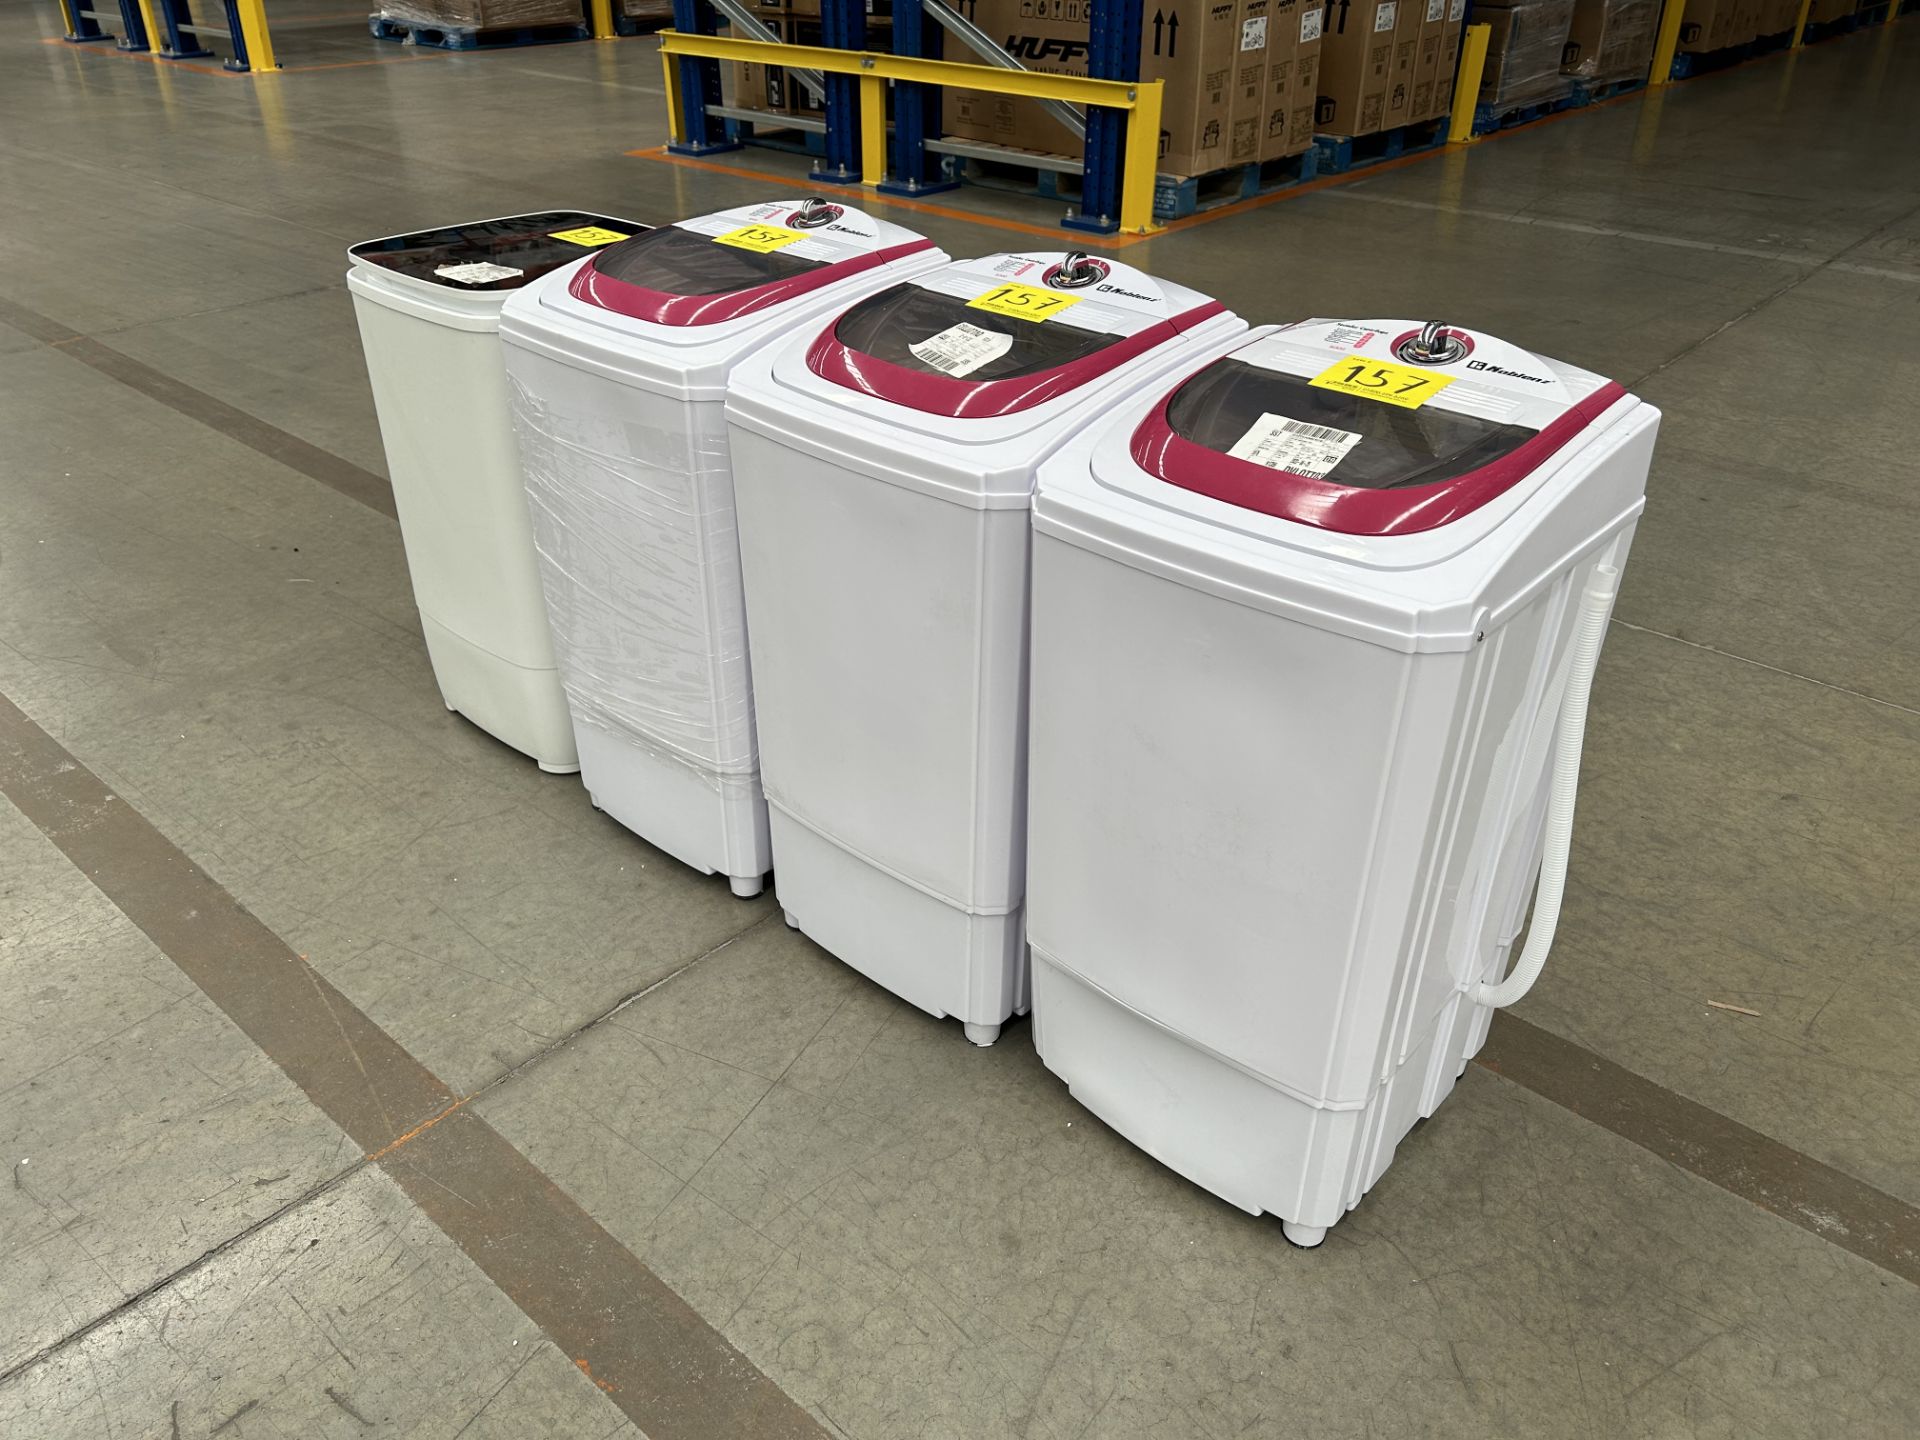 Lote de 4 lavadoras contiene: 1 secador centrifugado Marca KOBLENZ, Modelo SCK55; 1 secador centrif - Image 2 of 5